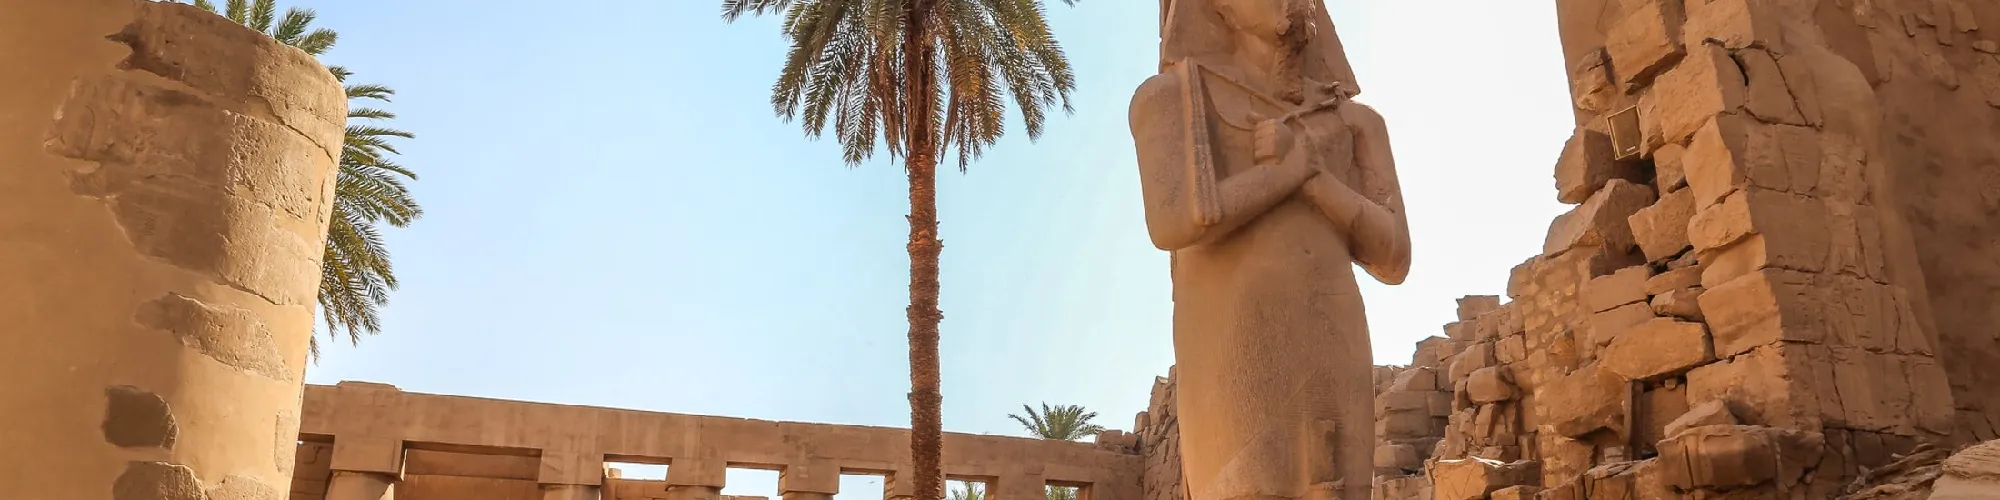 Urlaub in Ägypten background image